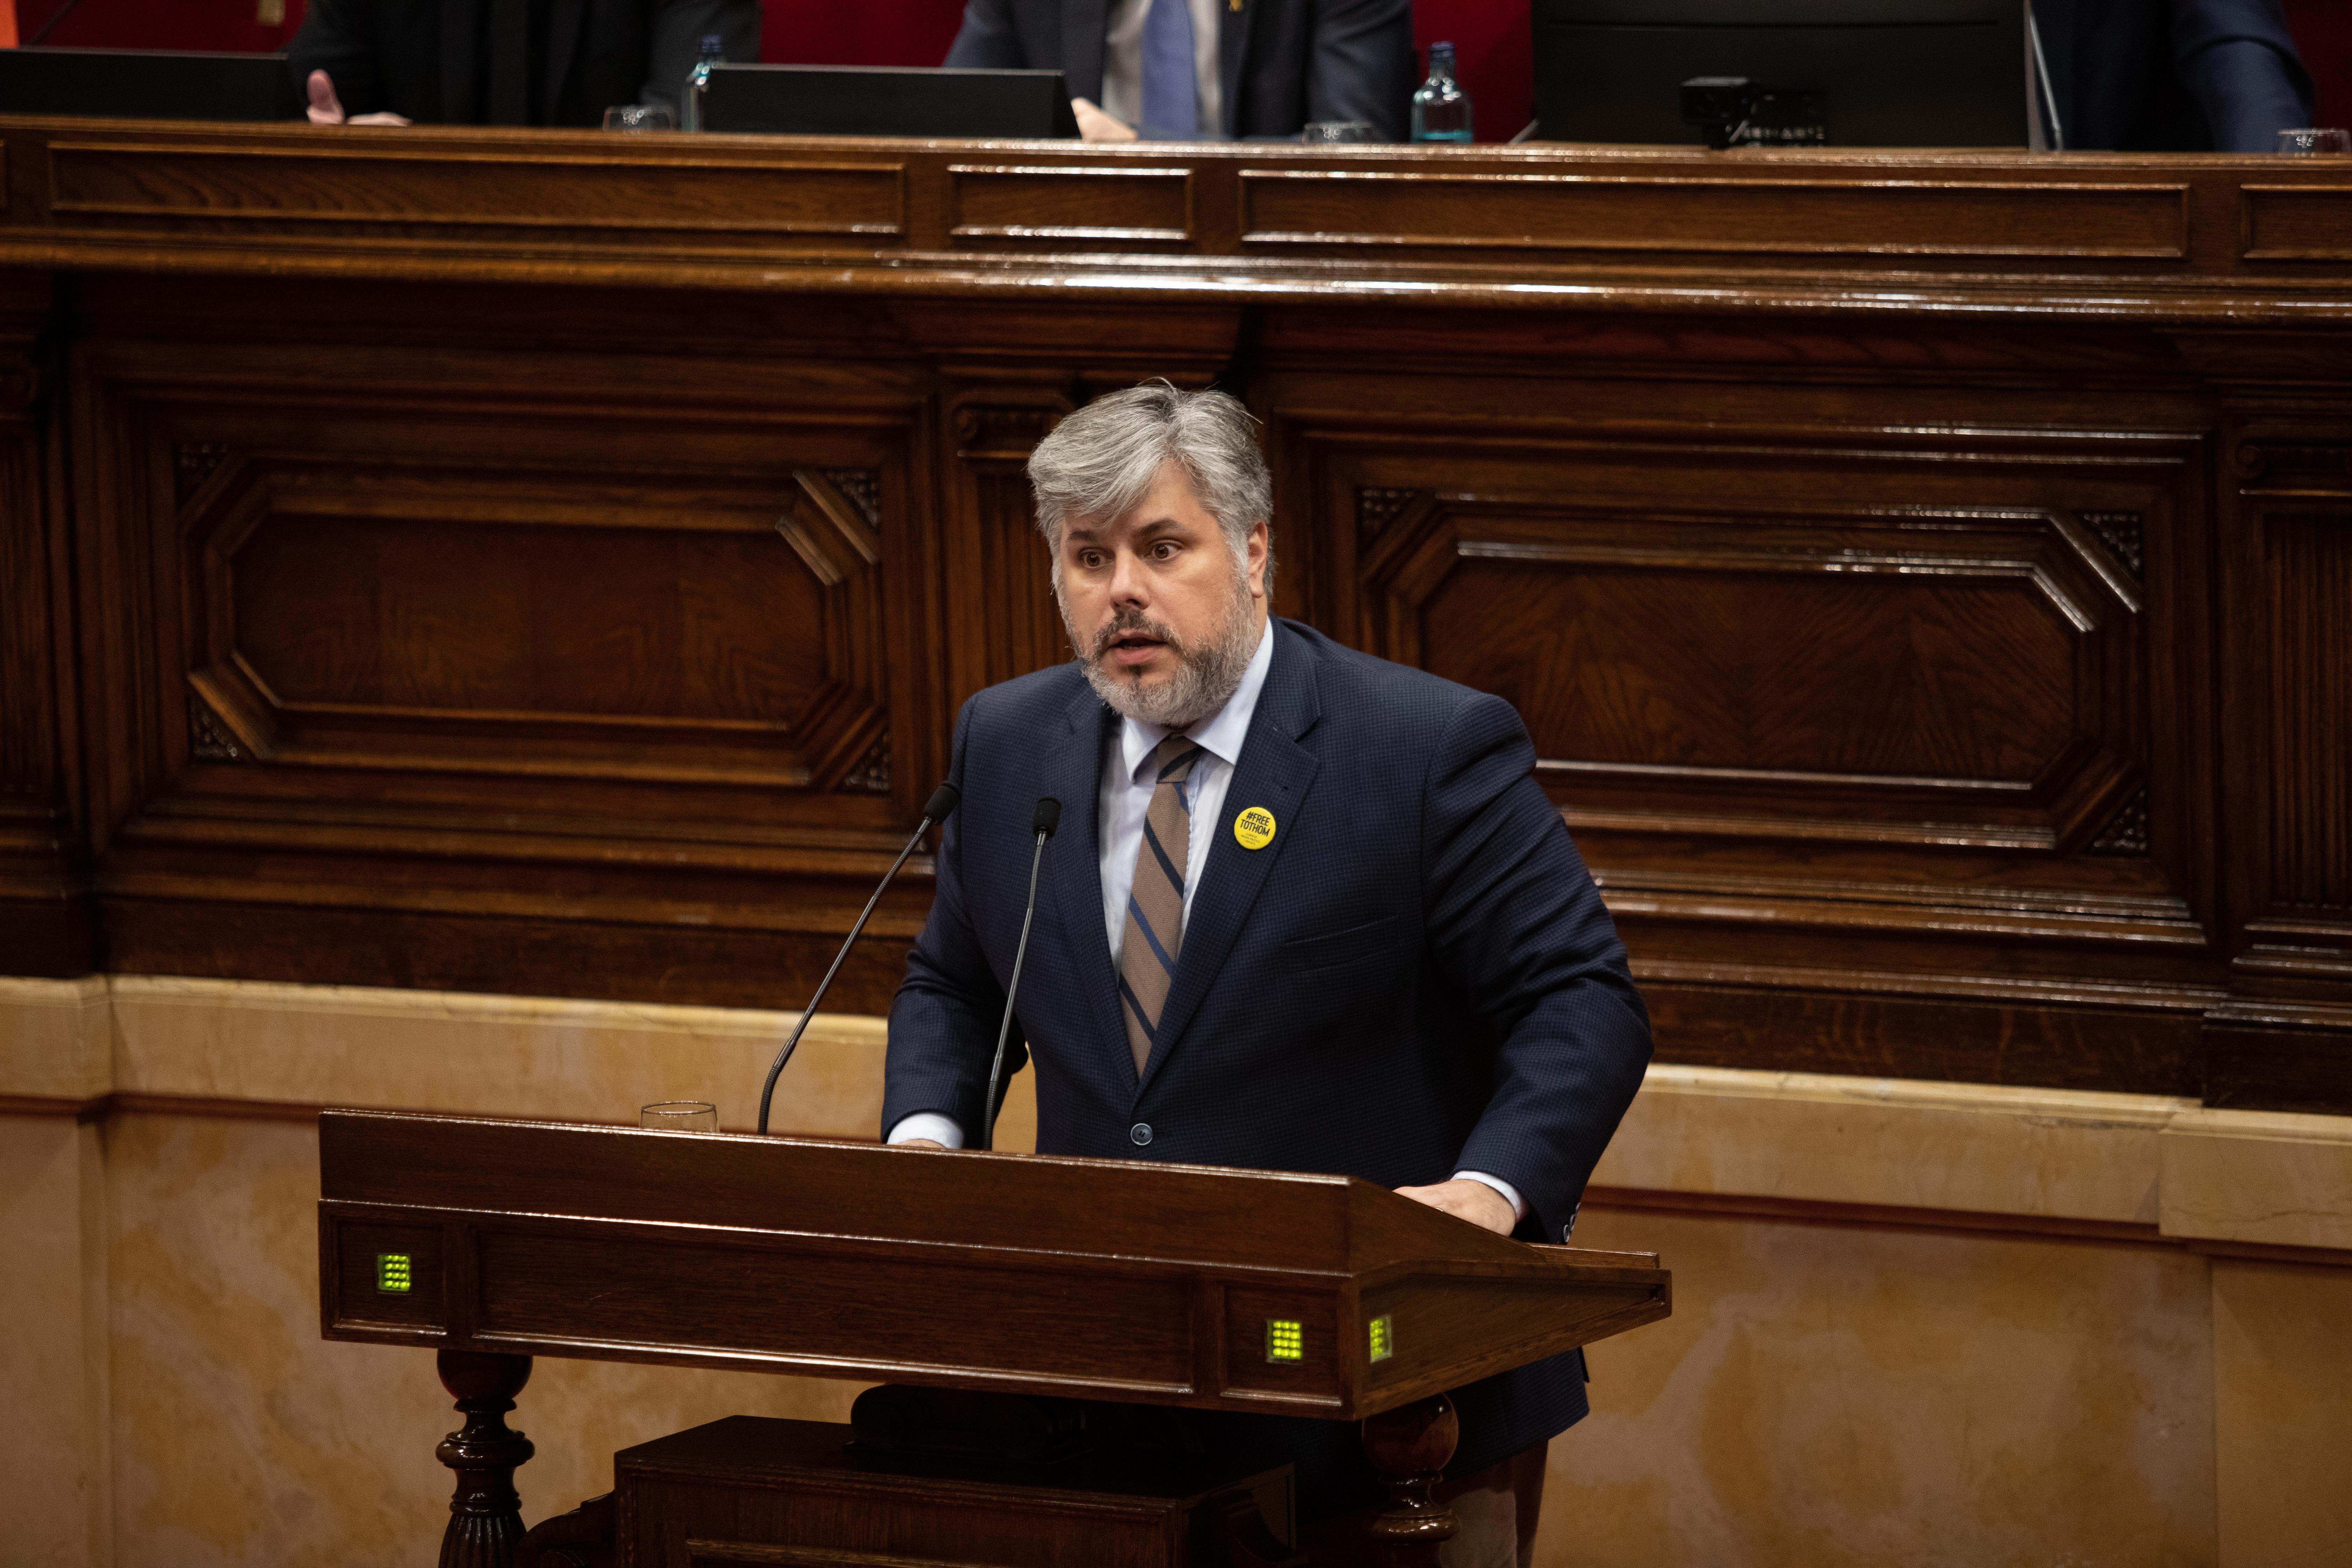  El presidente de JxCat en el Parlament, Albert Batet, interviene desde el atril durante un Pleno del Parlament de Catalunya 